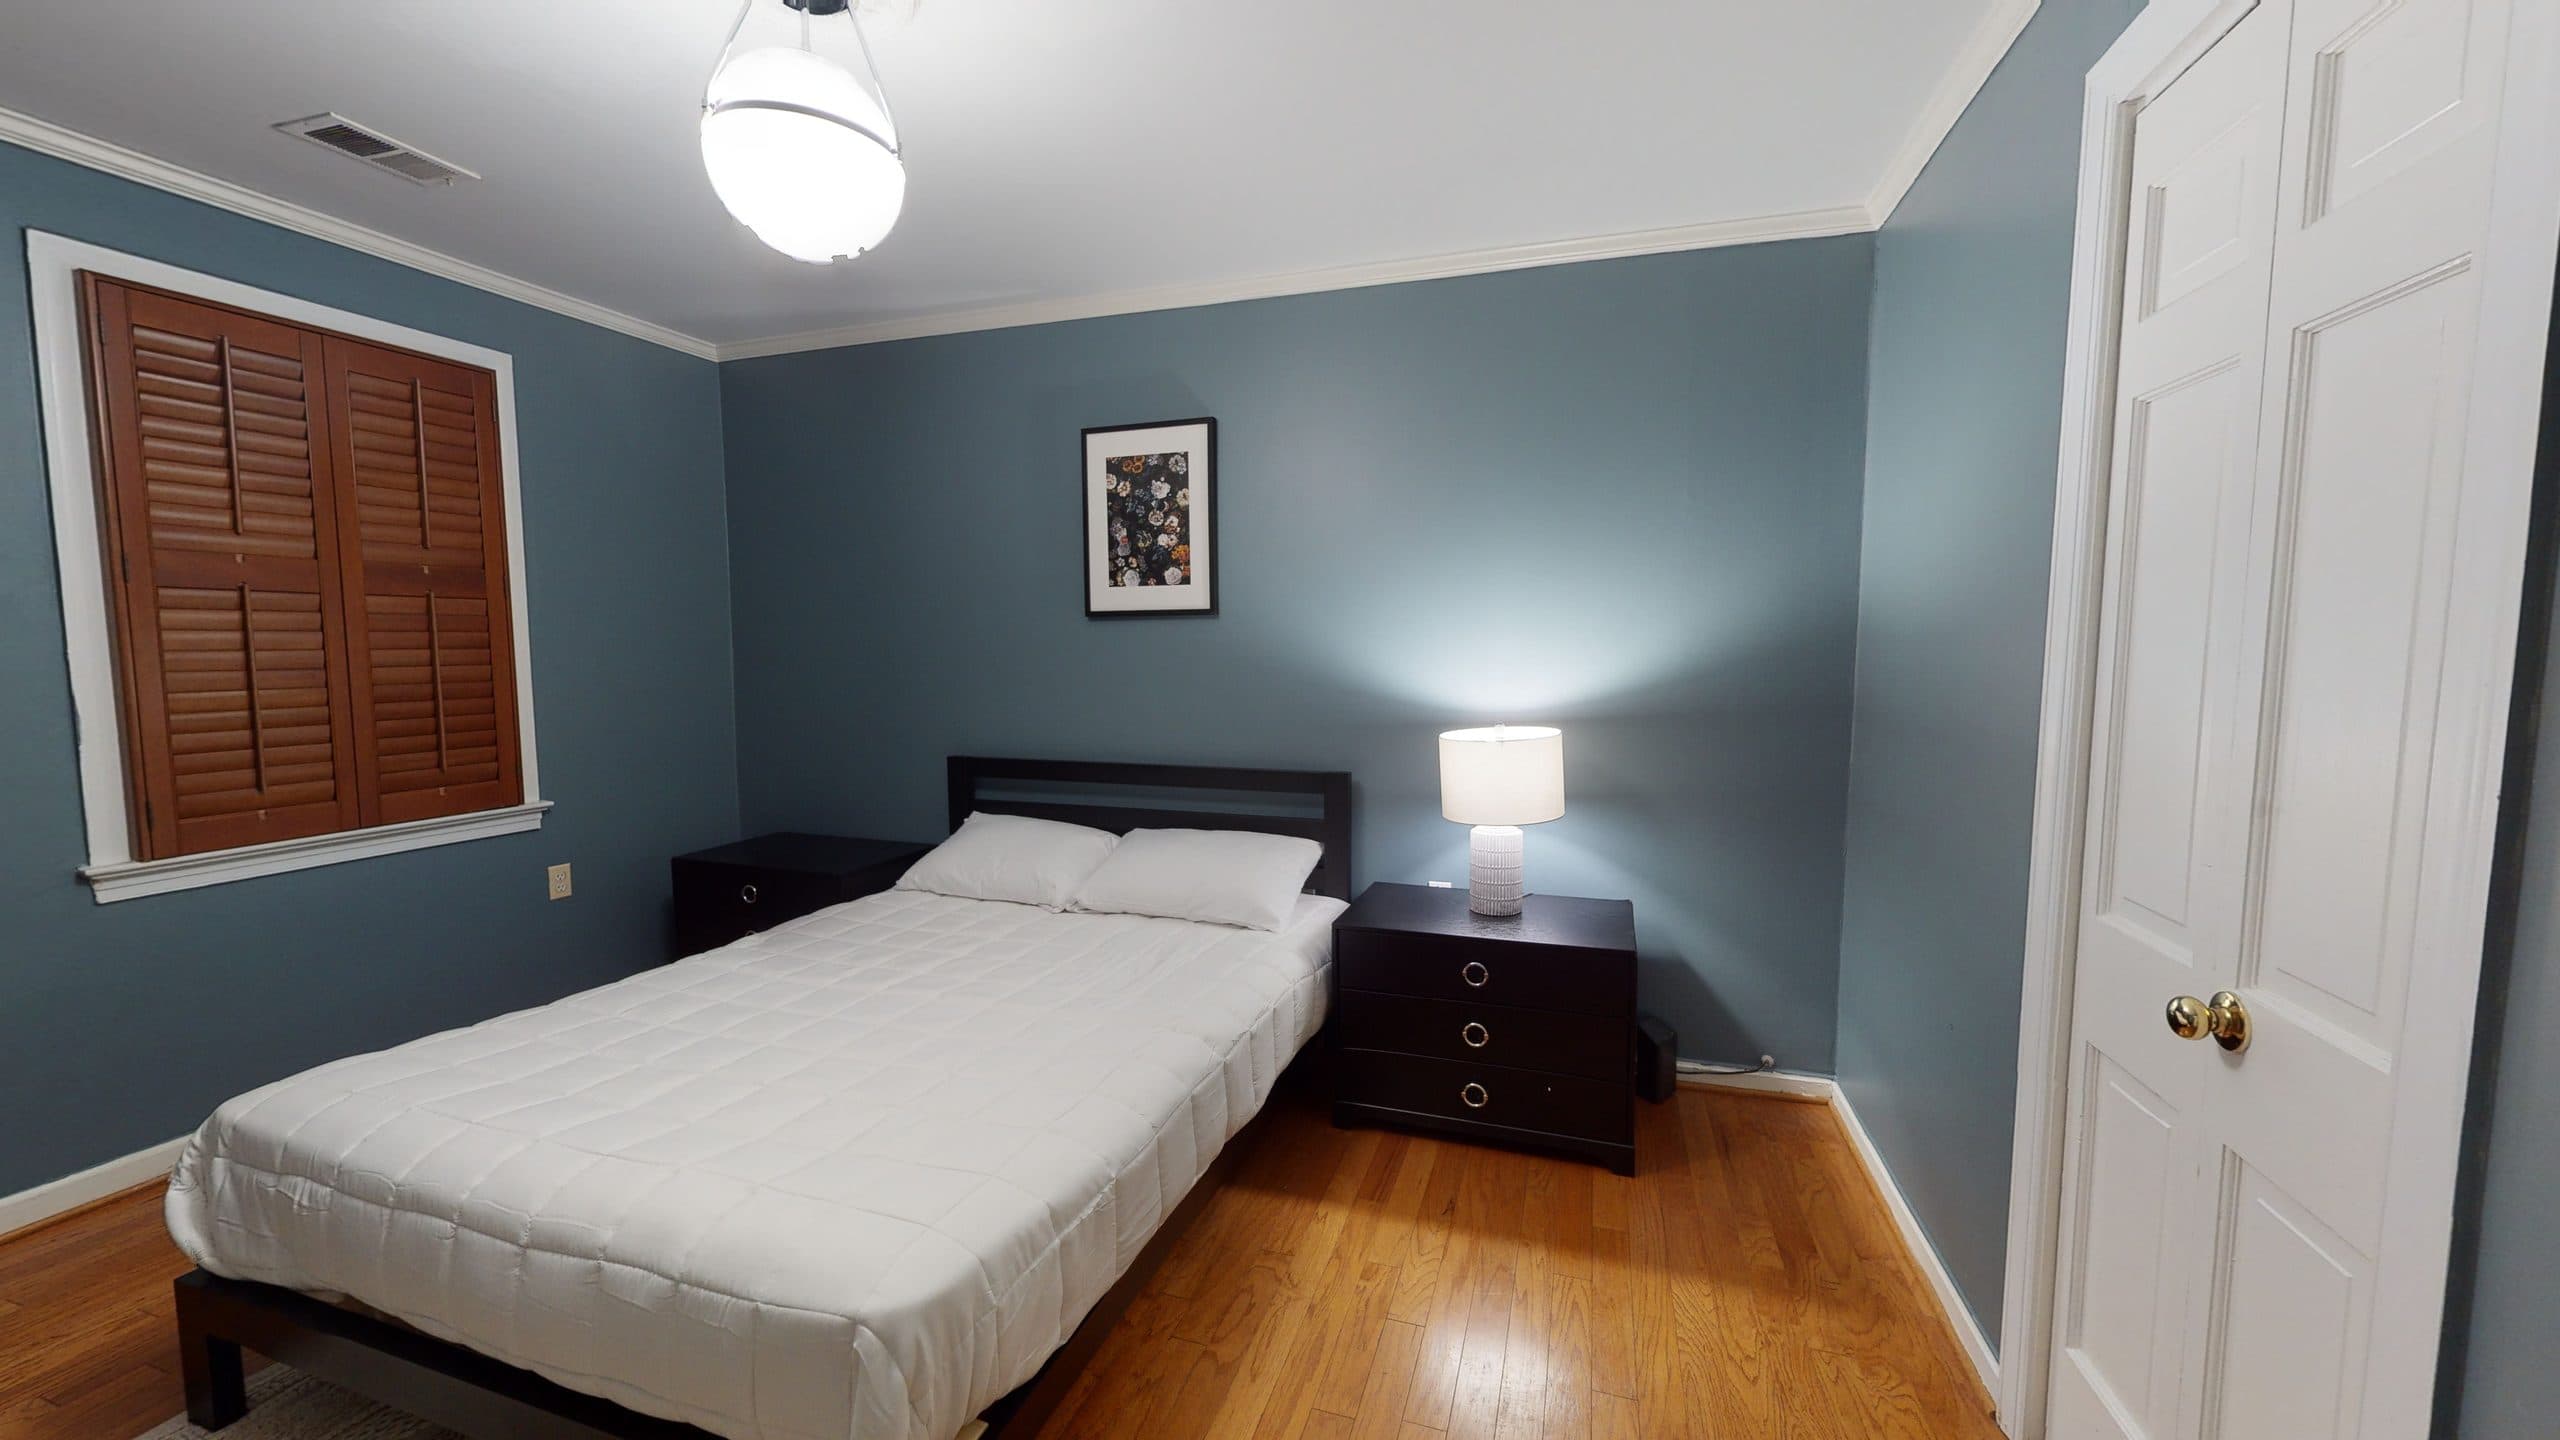 Photo 12 of #1425: Queen Bedroom 3F at June Homes